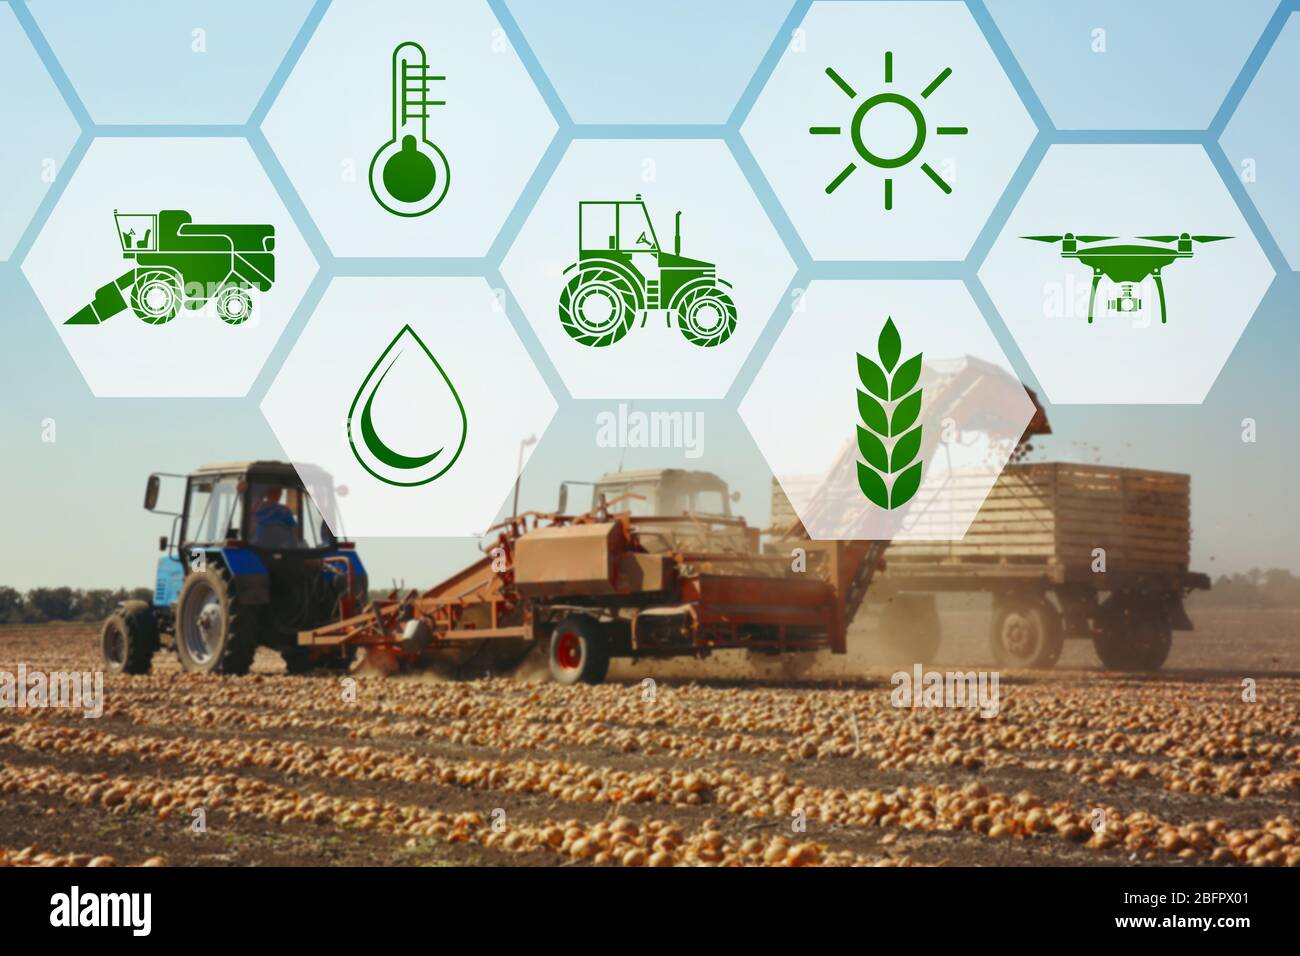 Ikonen und Prozess der Ernte mit modernen landwirtschaftlichen Geräten auf Hintergrund. Konzept der intelligenten Landwirtschaft und moderner Technologie Stockfoto